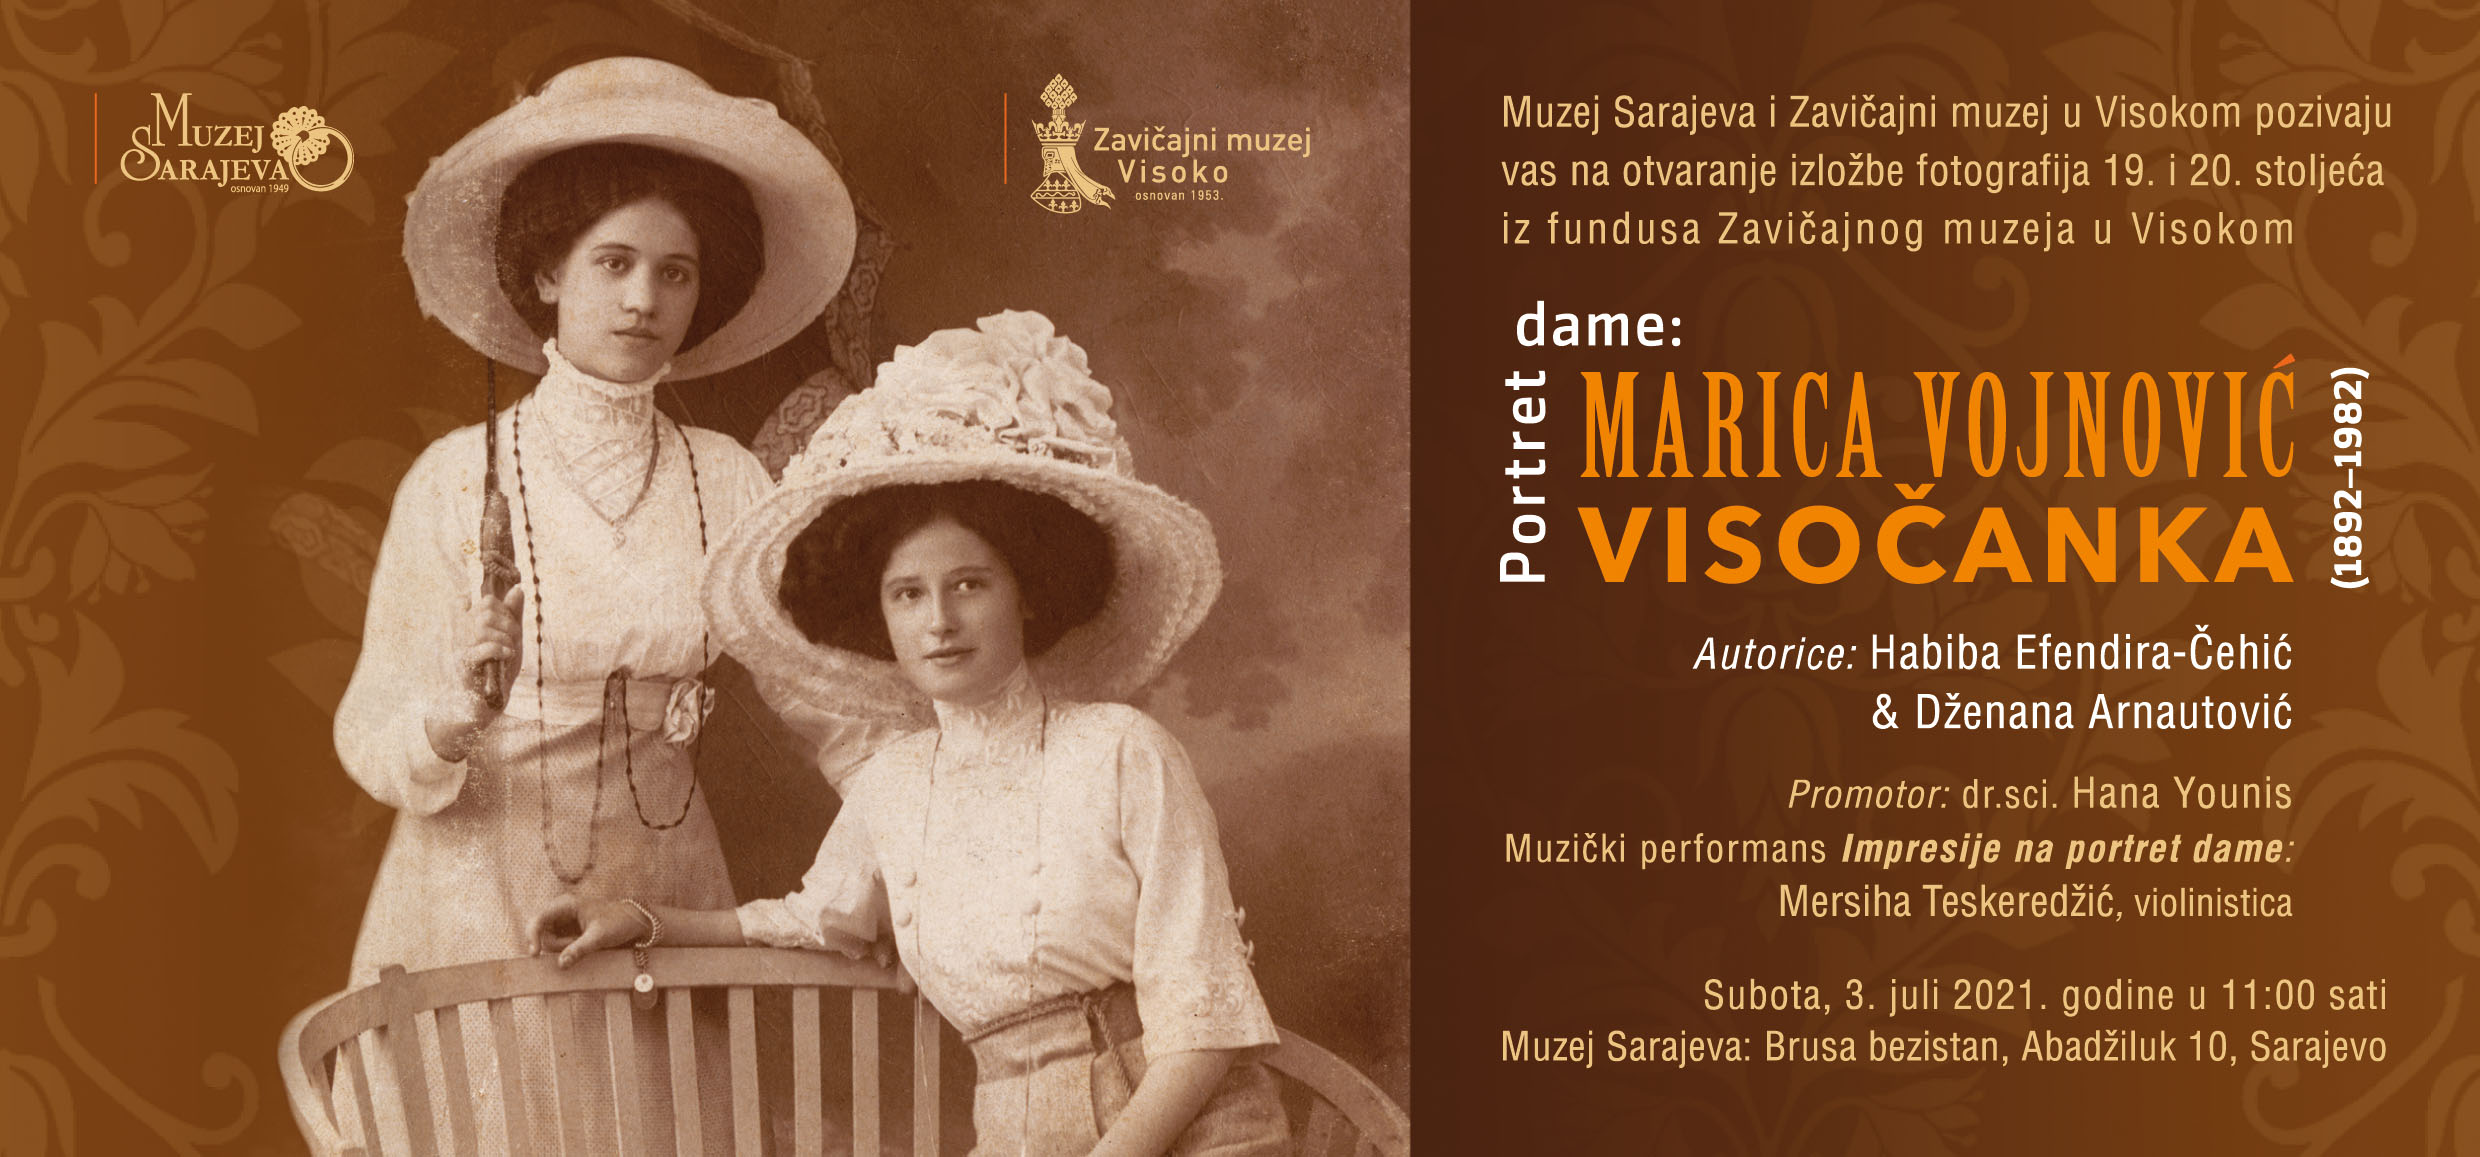 Izložba “Portret dame: Marica Vojnović” u Muzeju Sarajeva